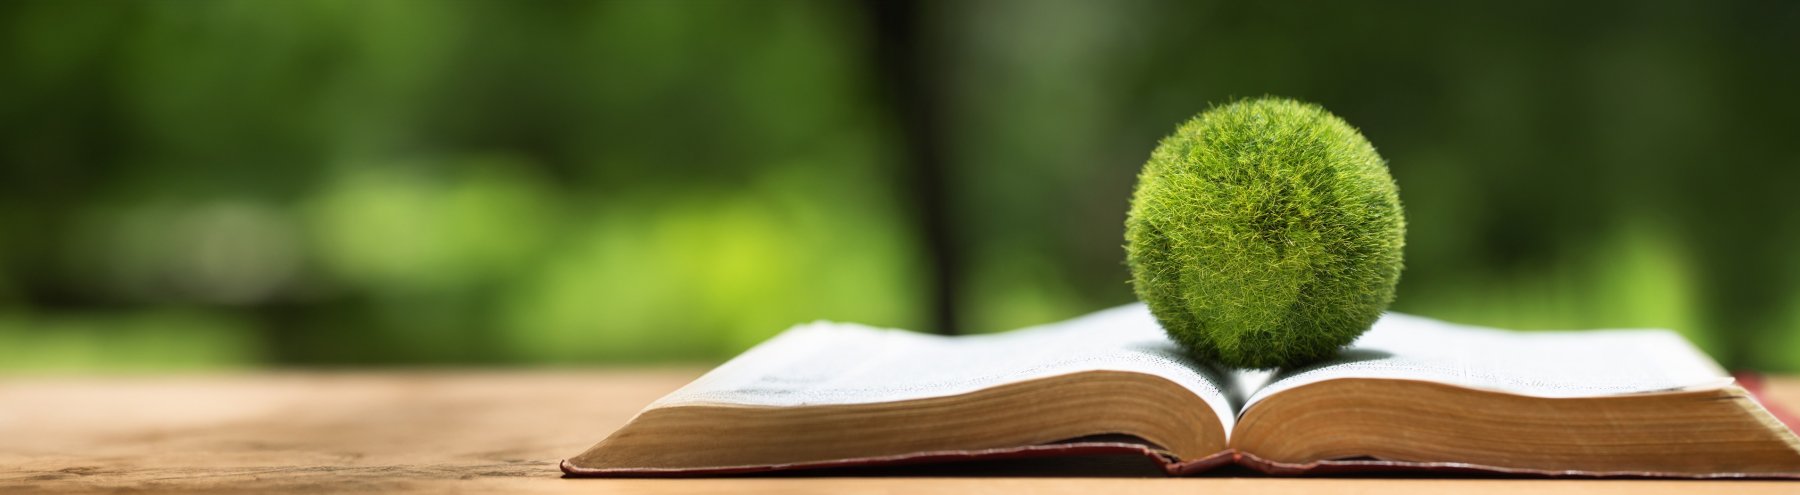 In einem geöffnetem Buch das in einem Wald liegt, liegt eine Weltkugel die aus Moos geformt ist. Das Bild ist vorwiegend grün.